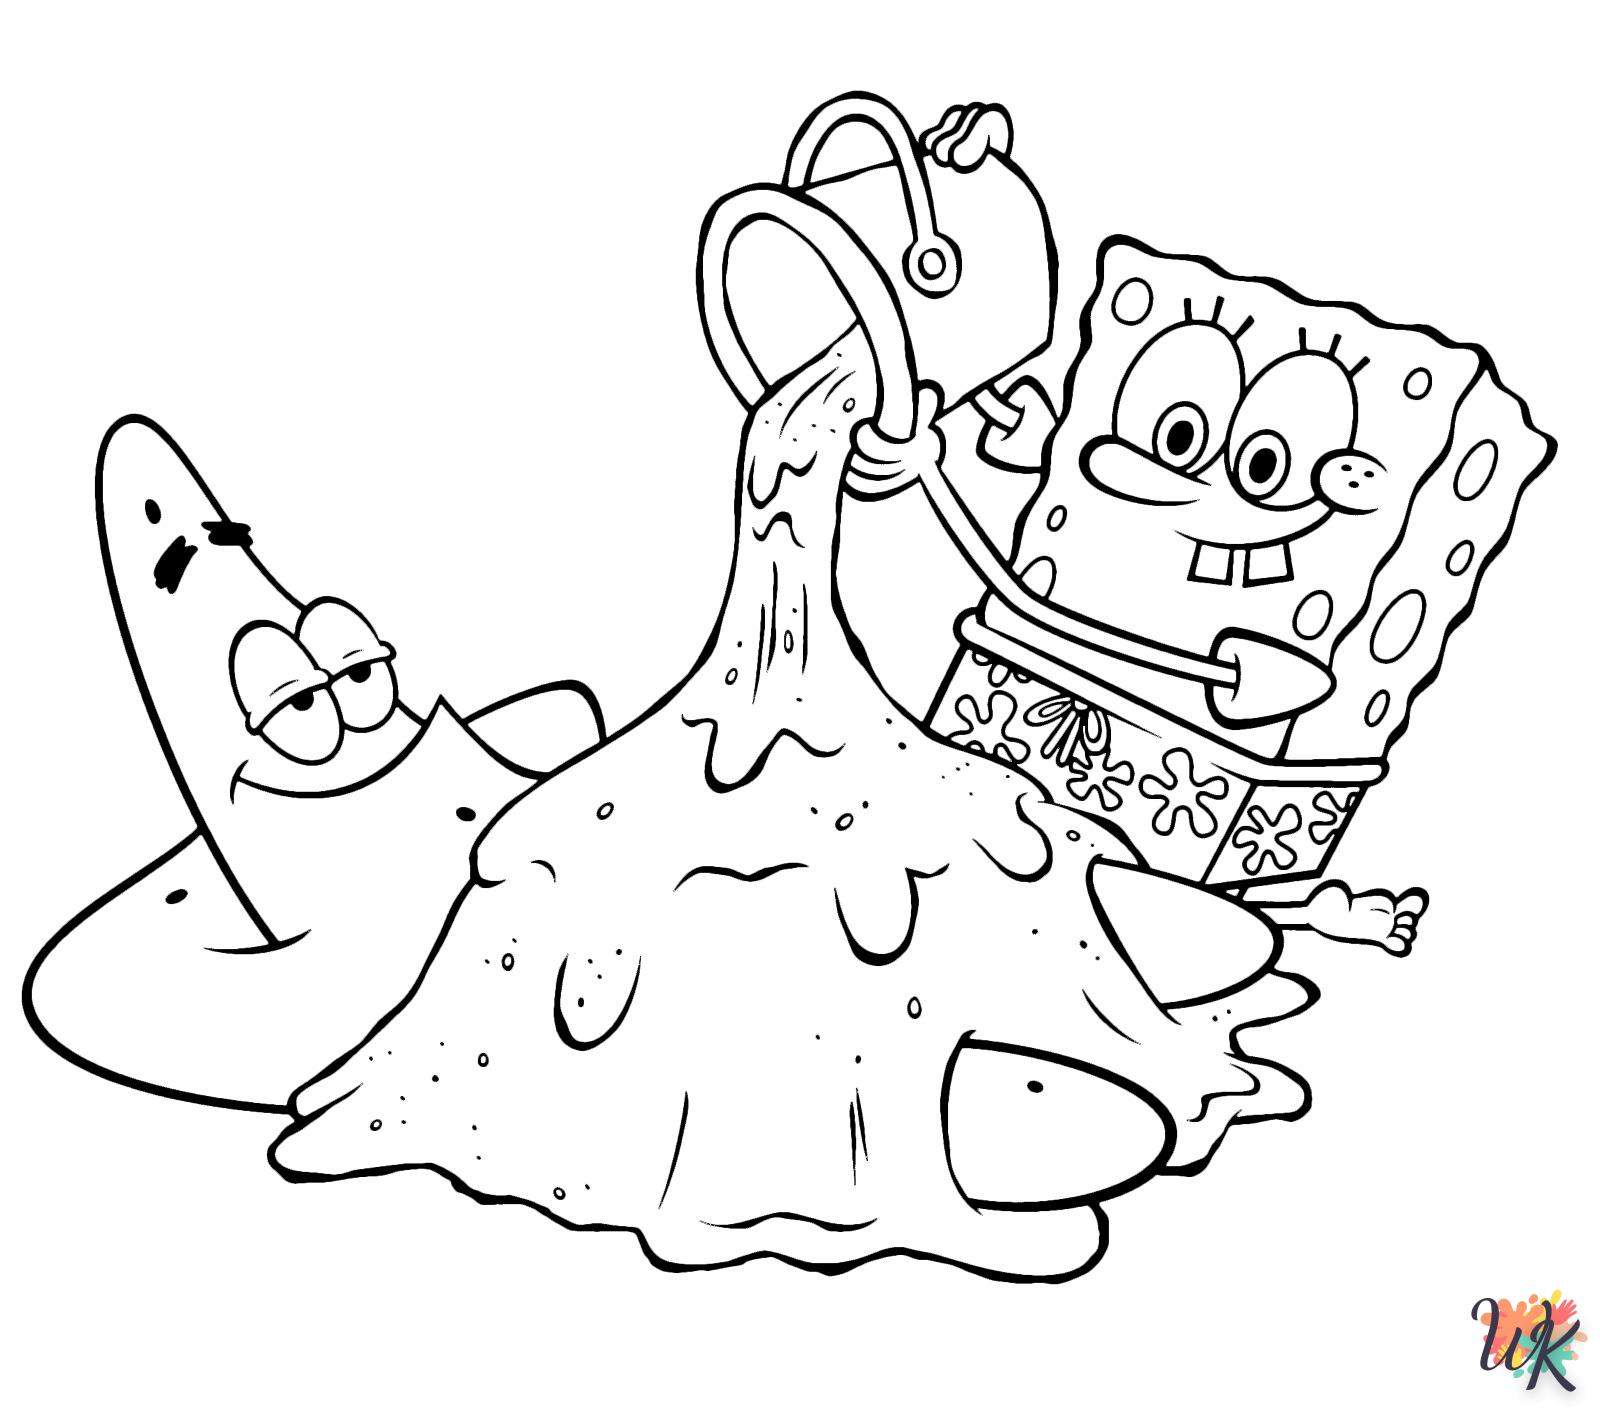 Spongebob 35